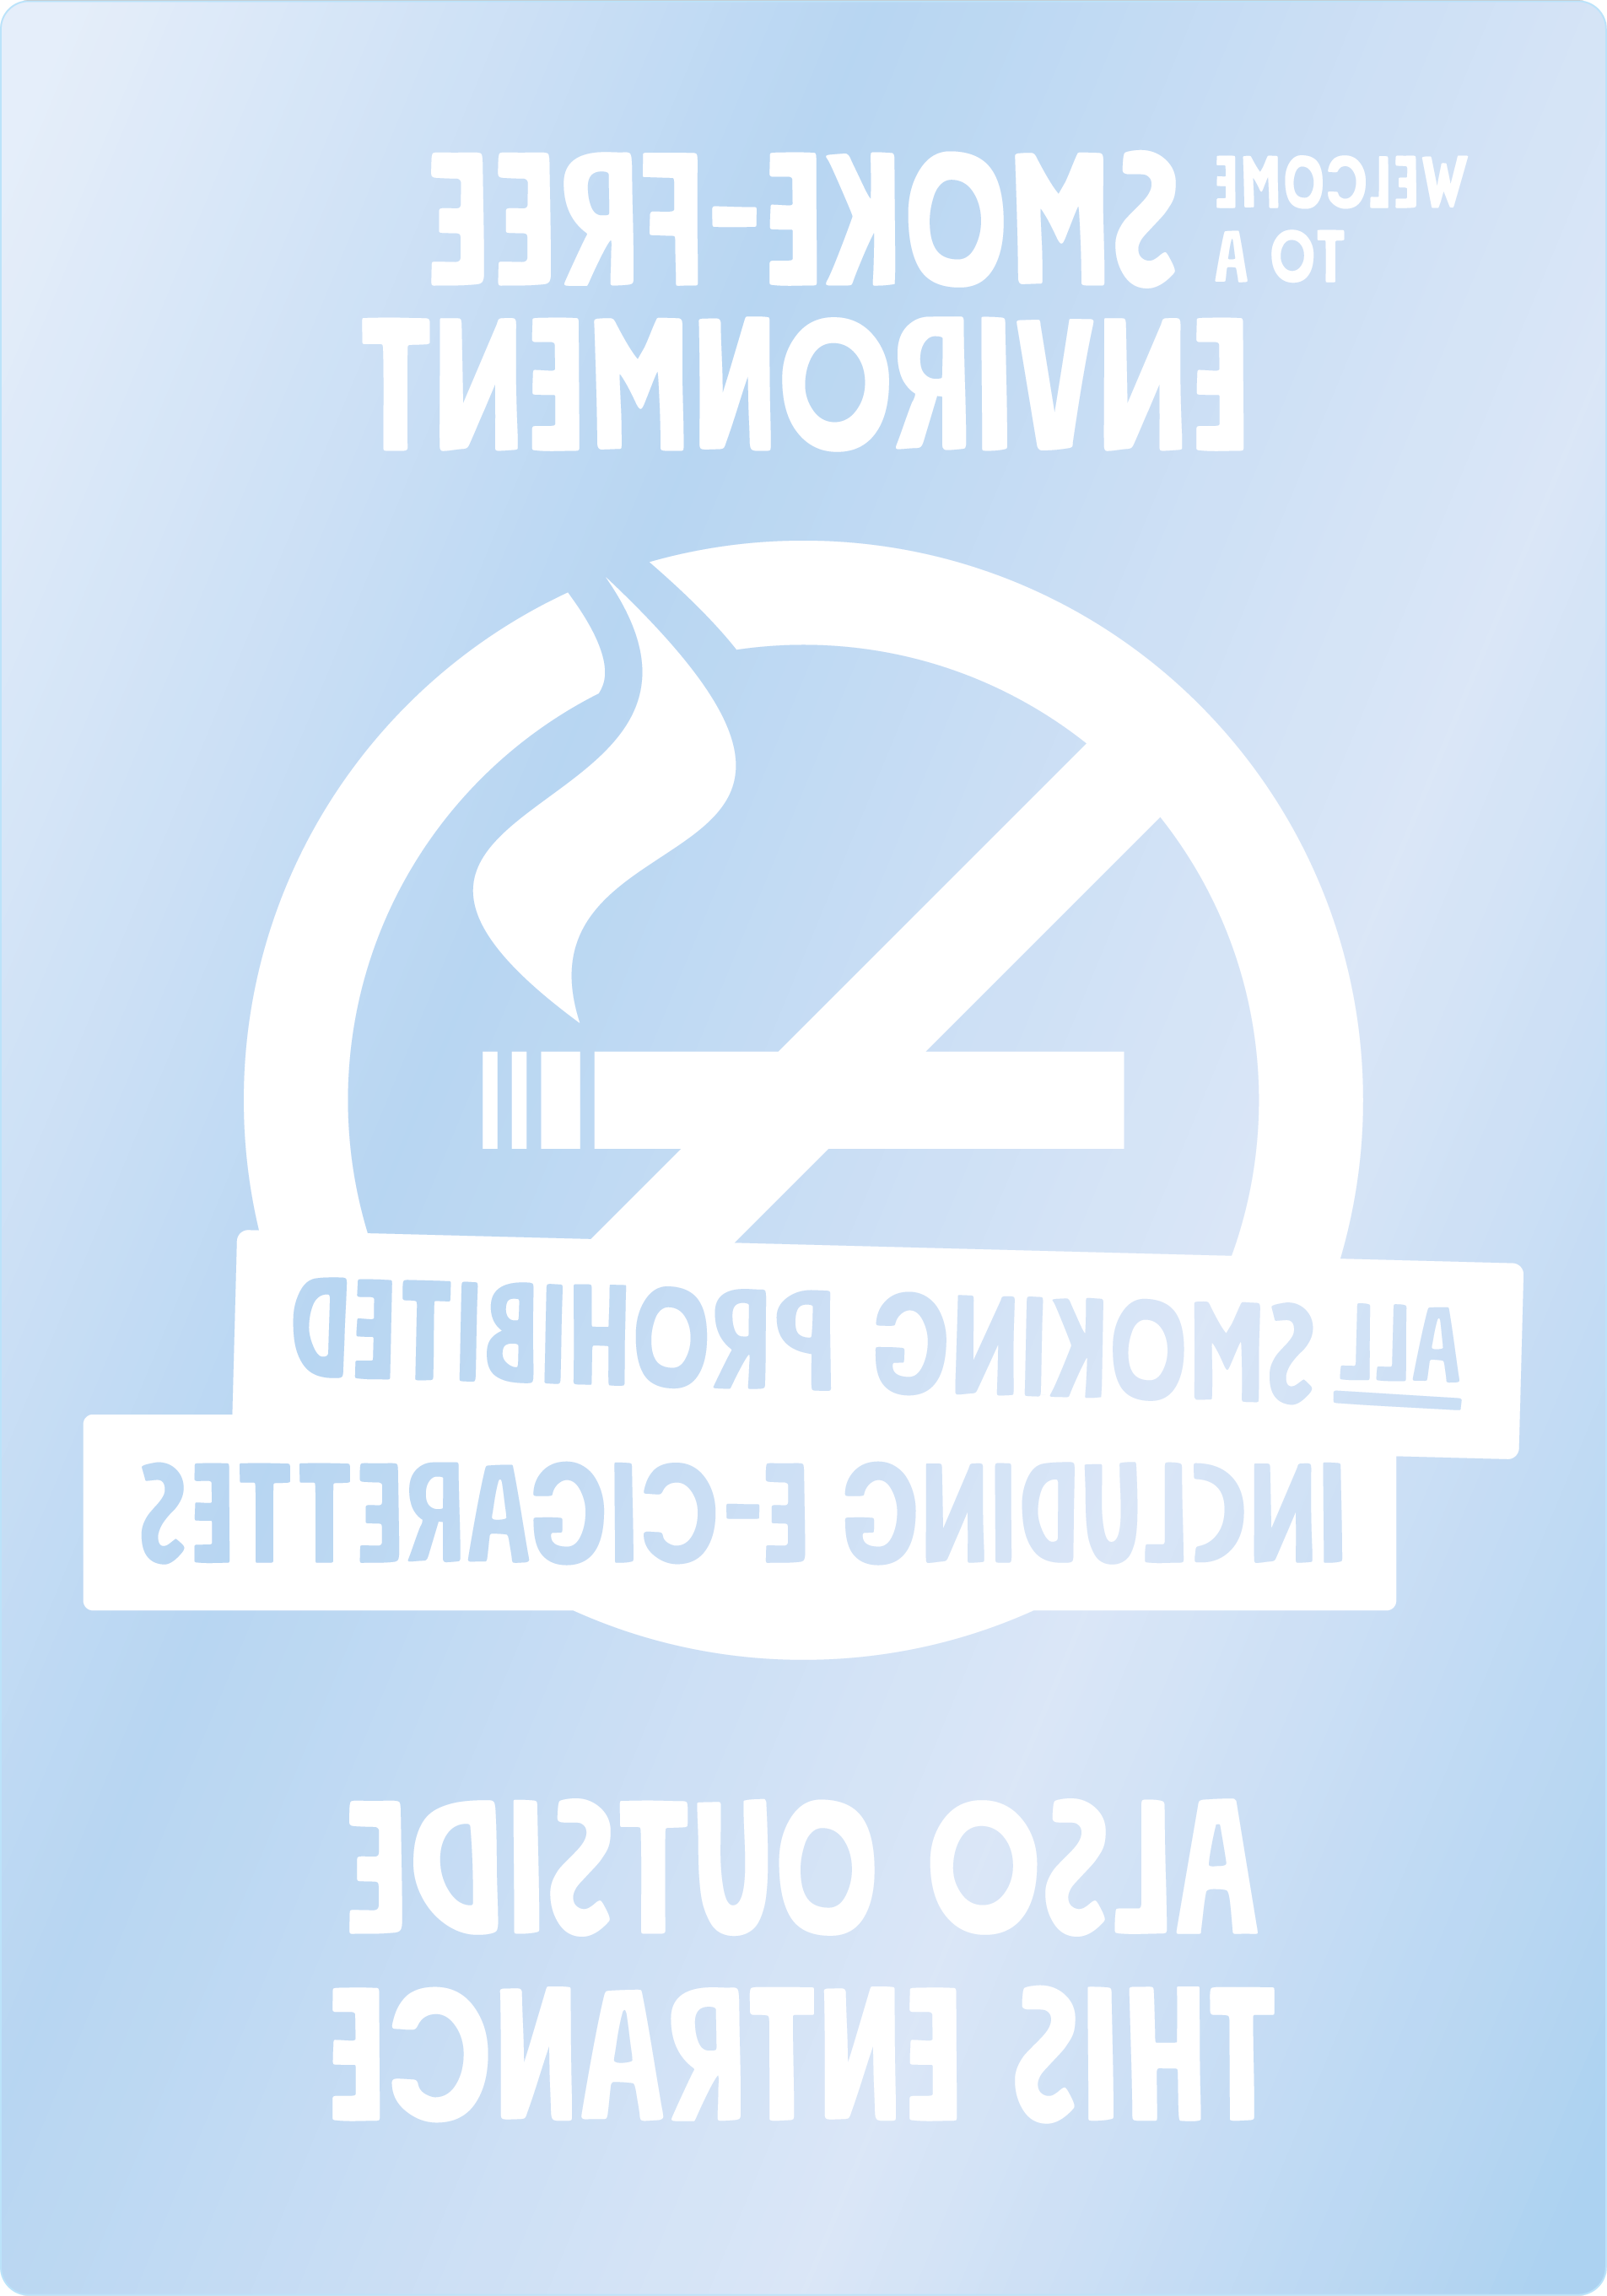 Bild rökförbudsskylt 04B14 ENG: Vit / Transparent